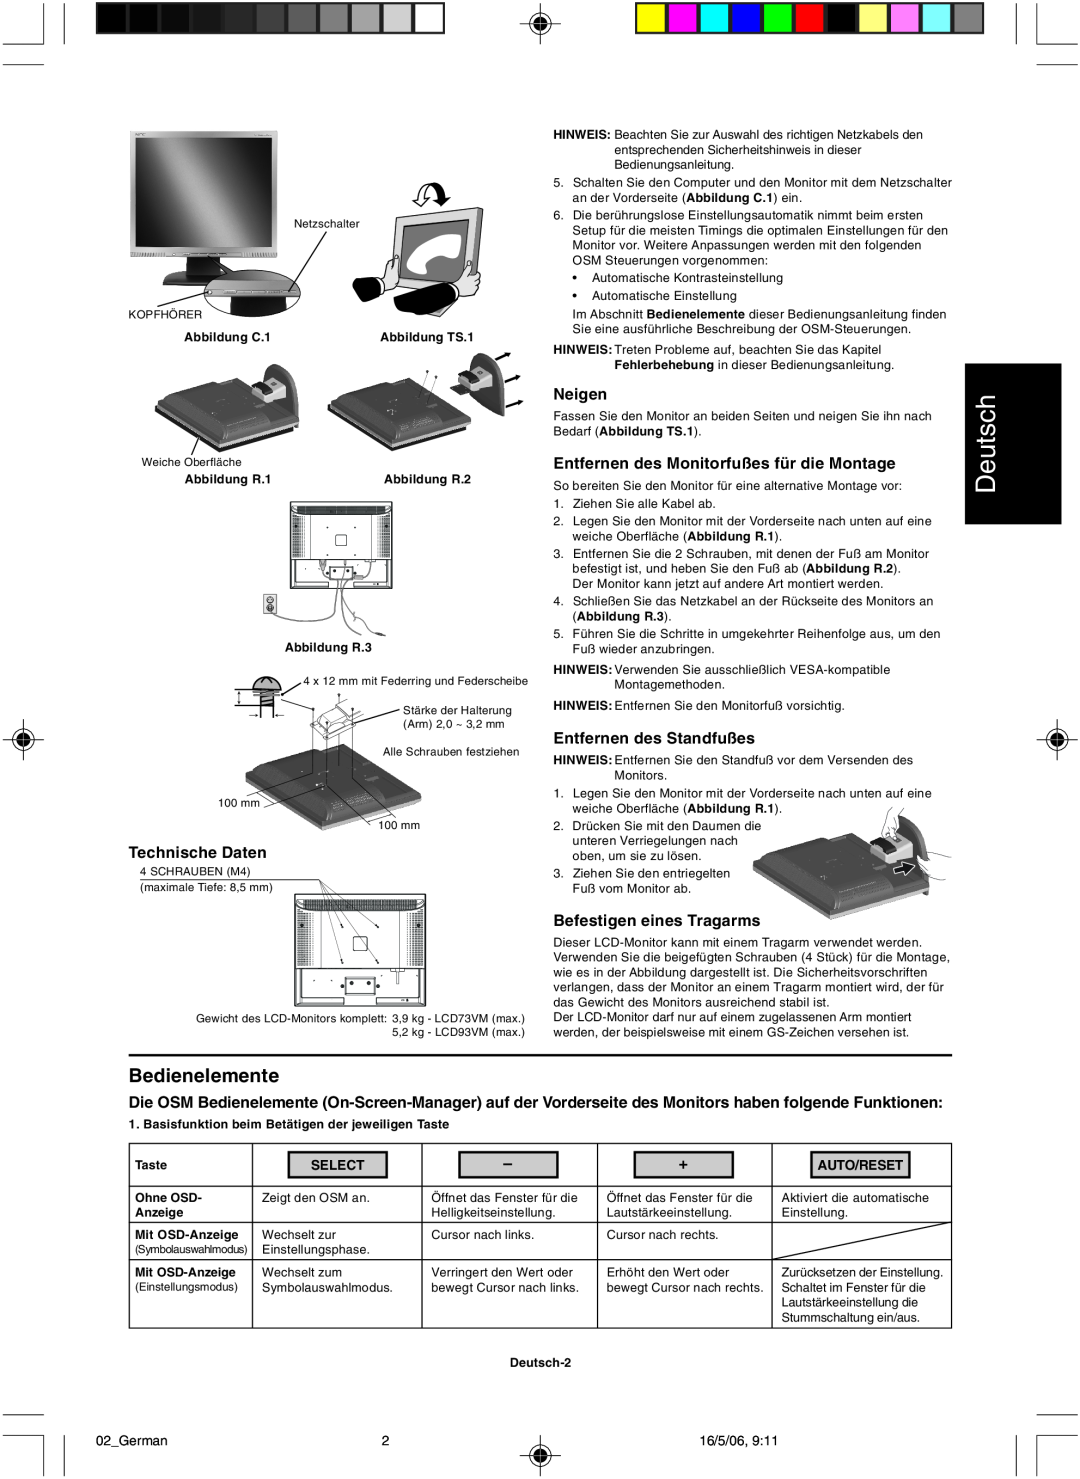 NEC LCD73VM Bedienelemente, Deutsch, Technische Daten, Neigen, Entfernen des Monitorfußes für die Montage, Select 